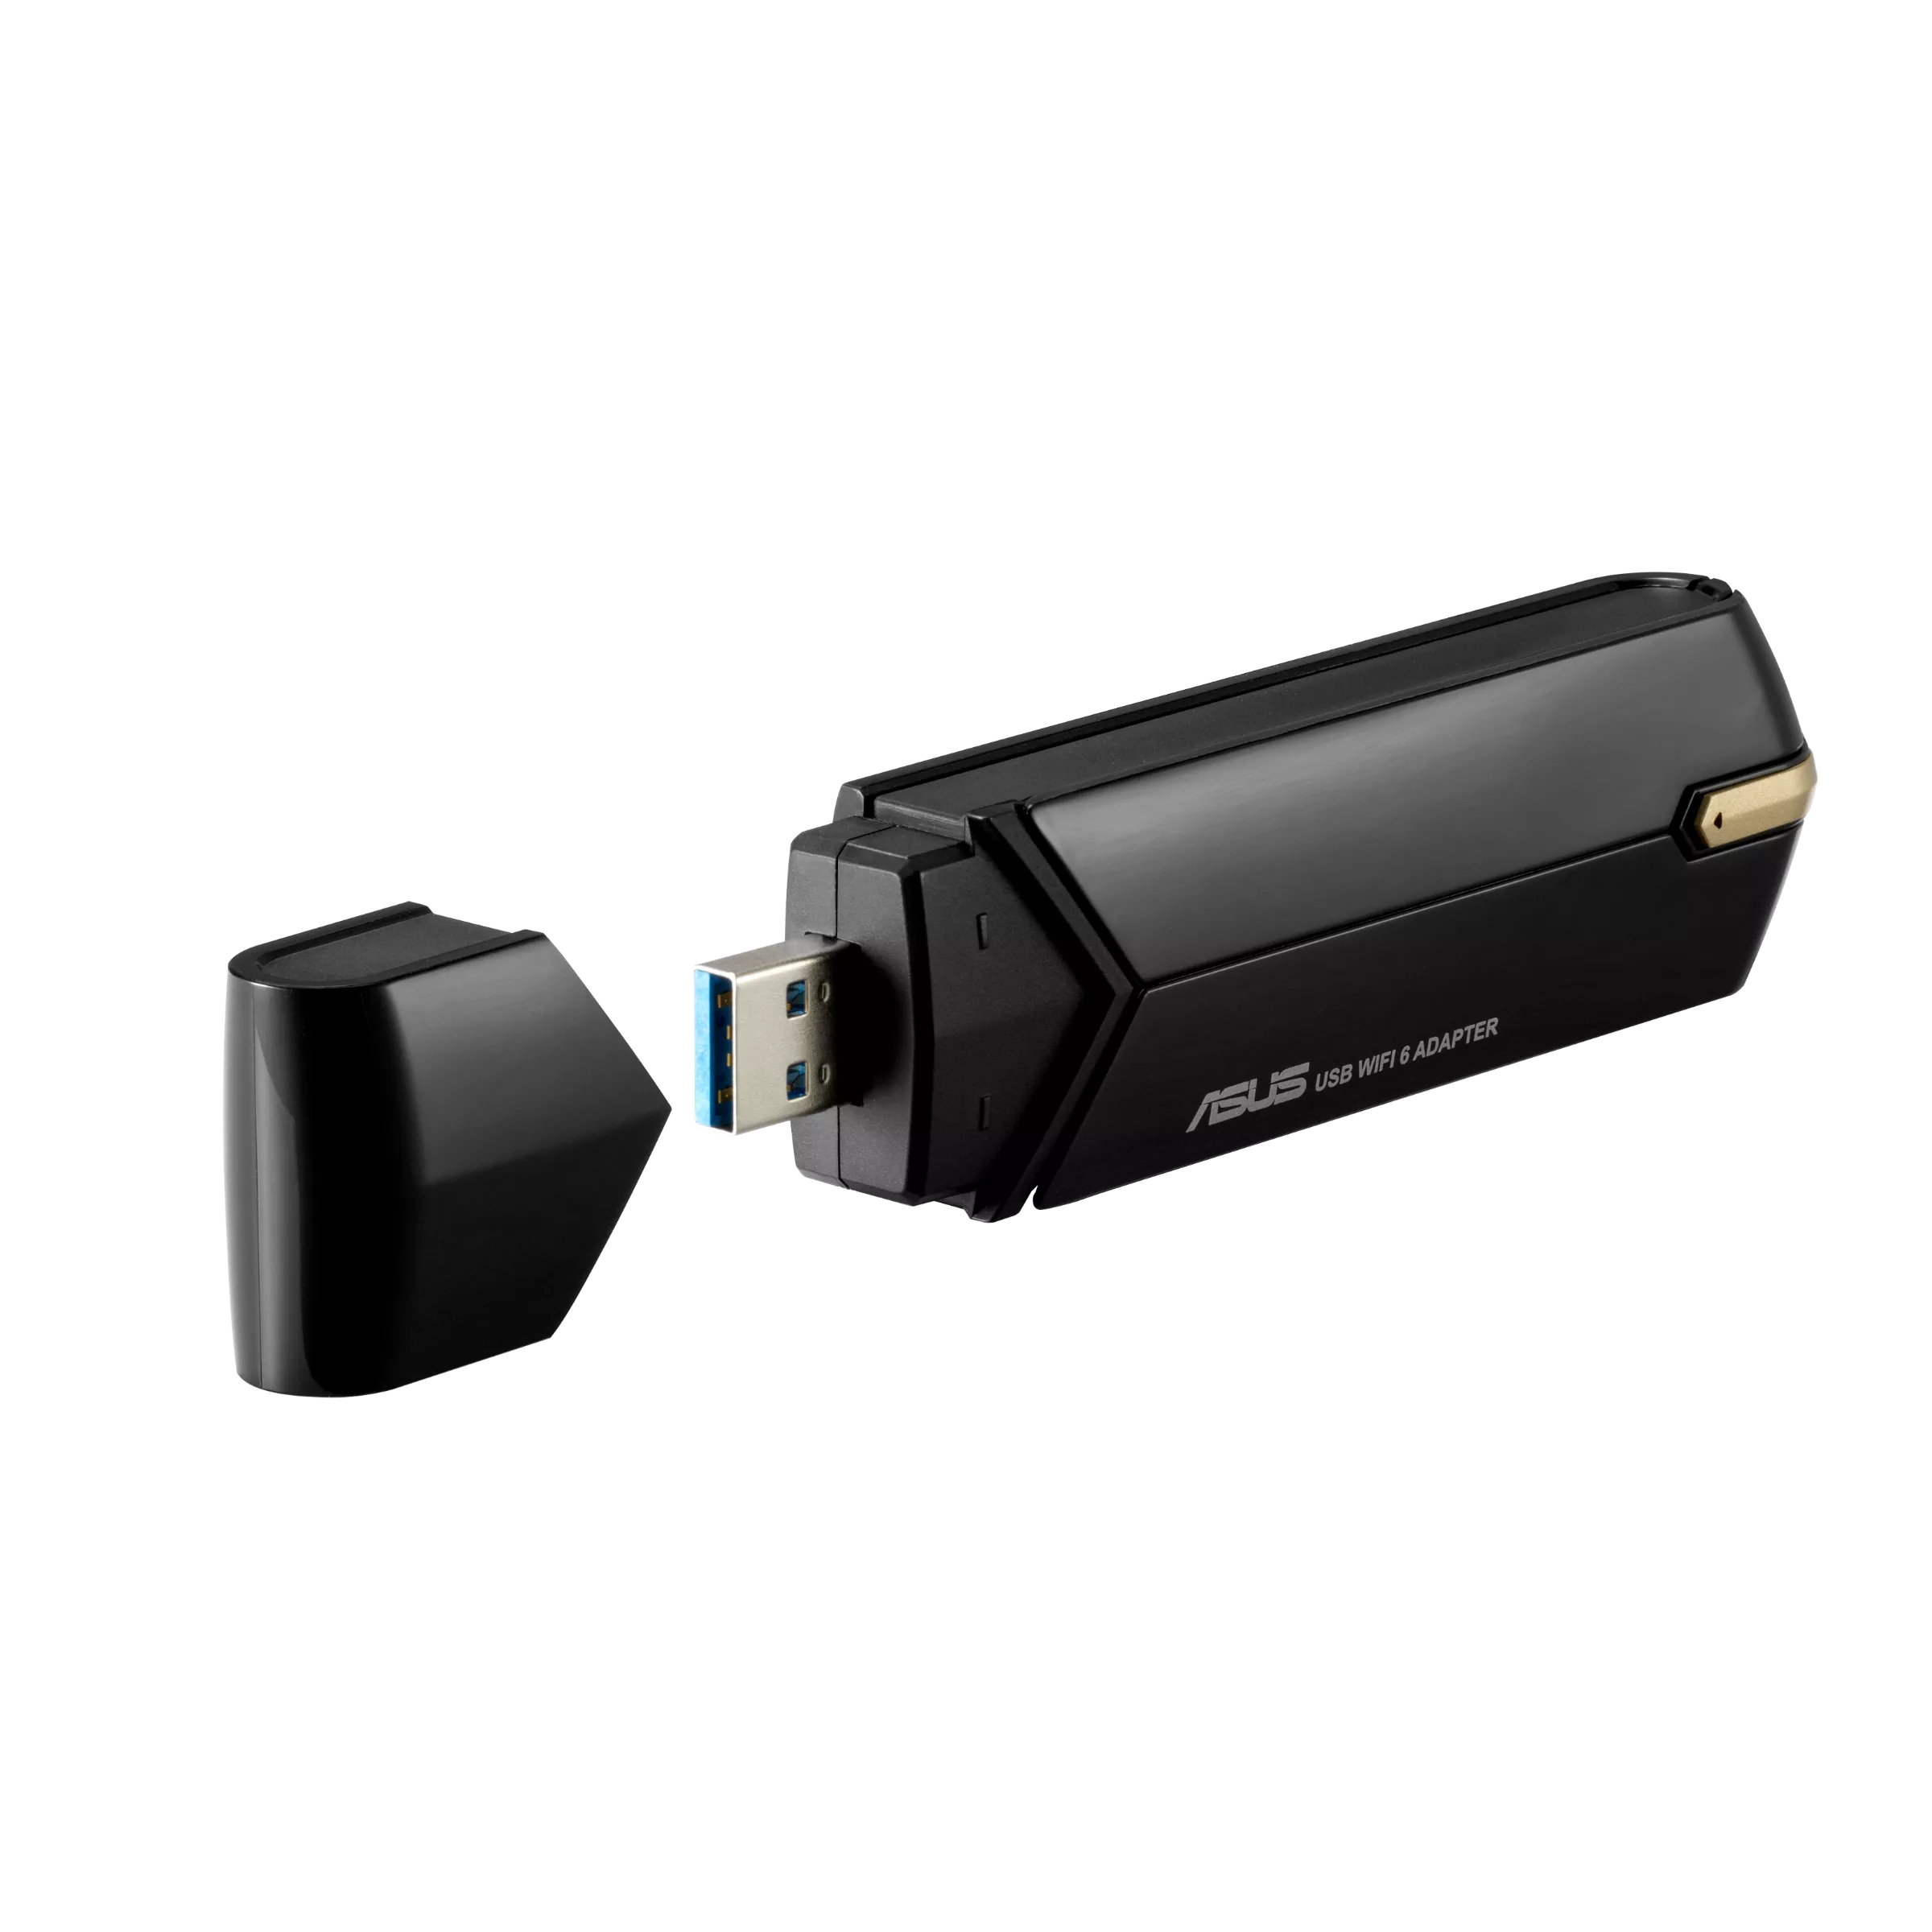 WLAN-Adapter ASUS USB-AX56